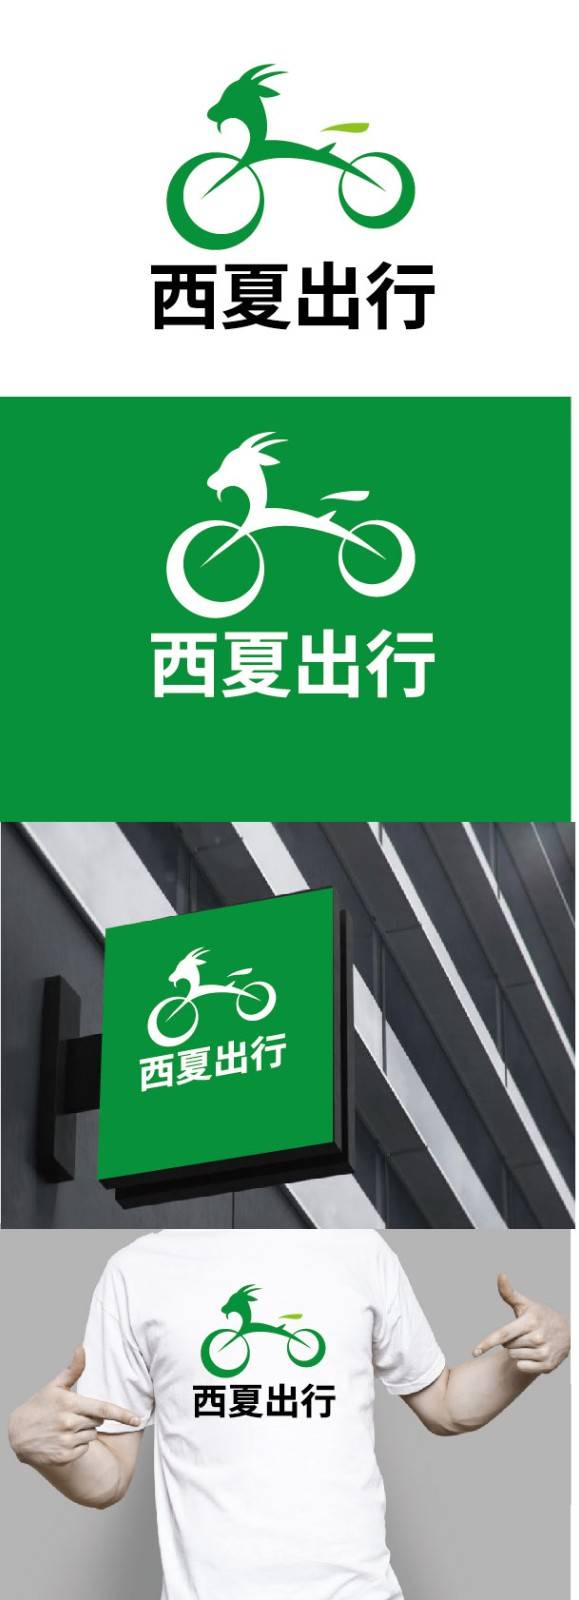 西夏出行共享电动自行车logo设计